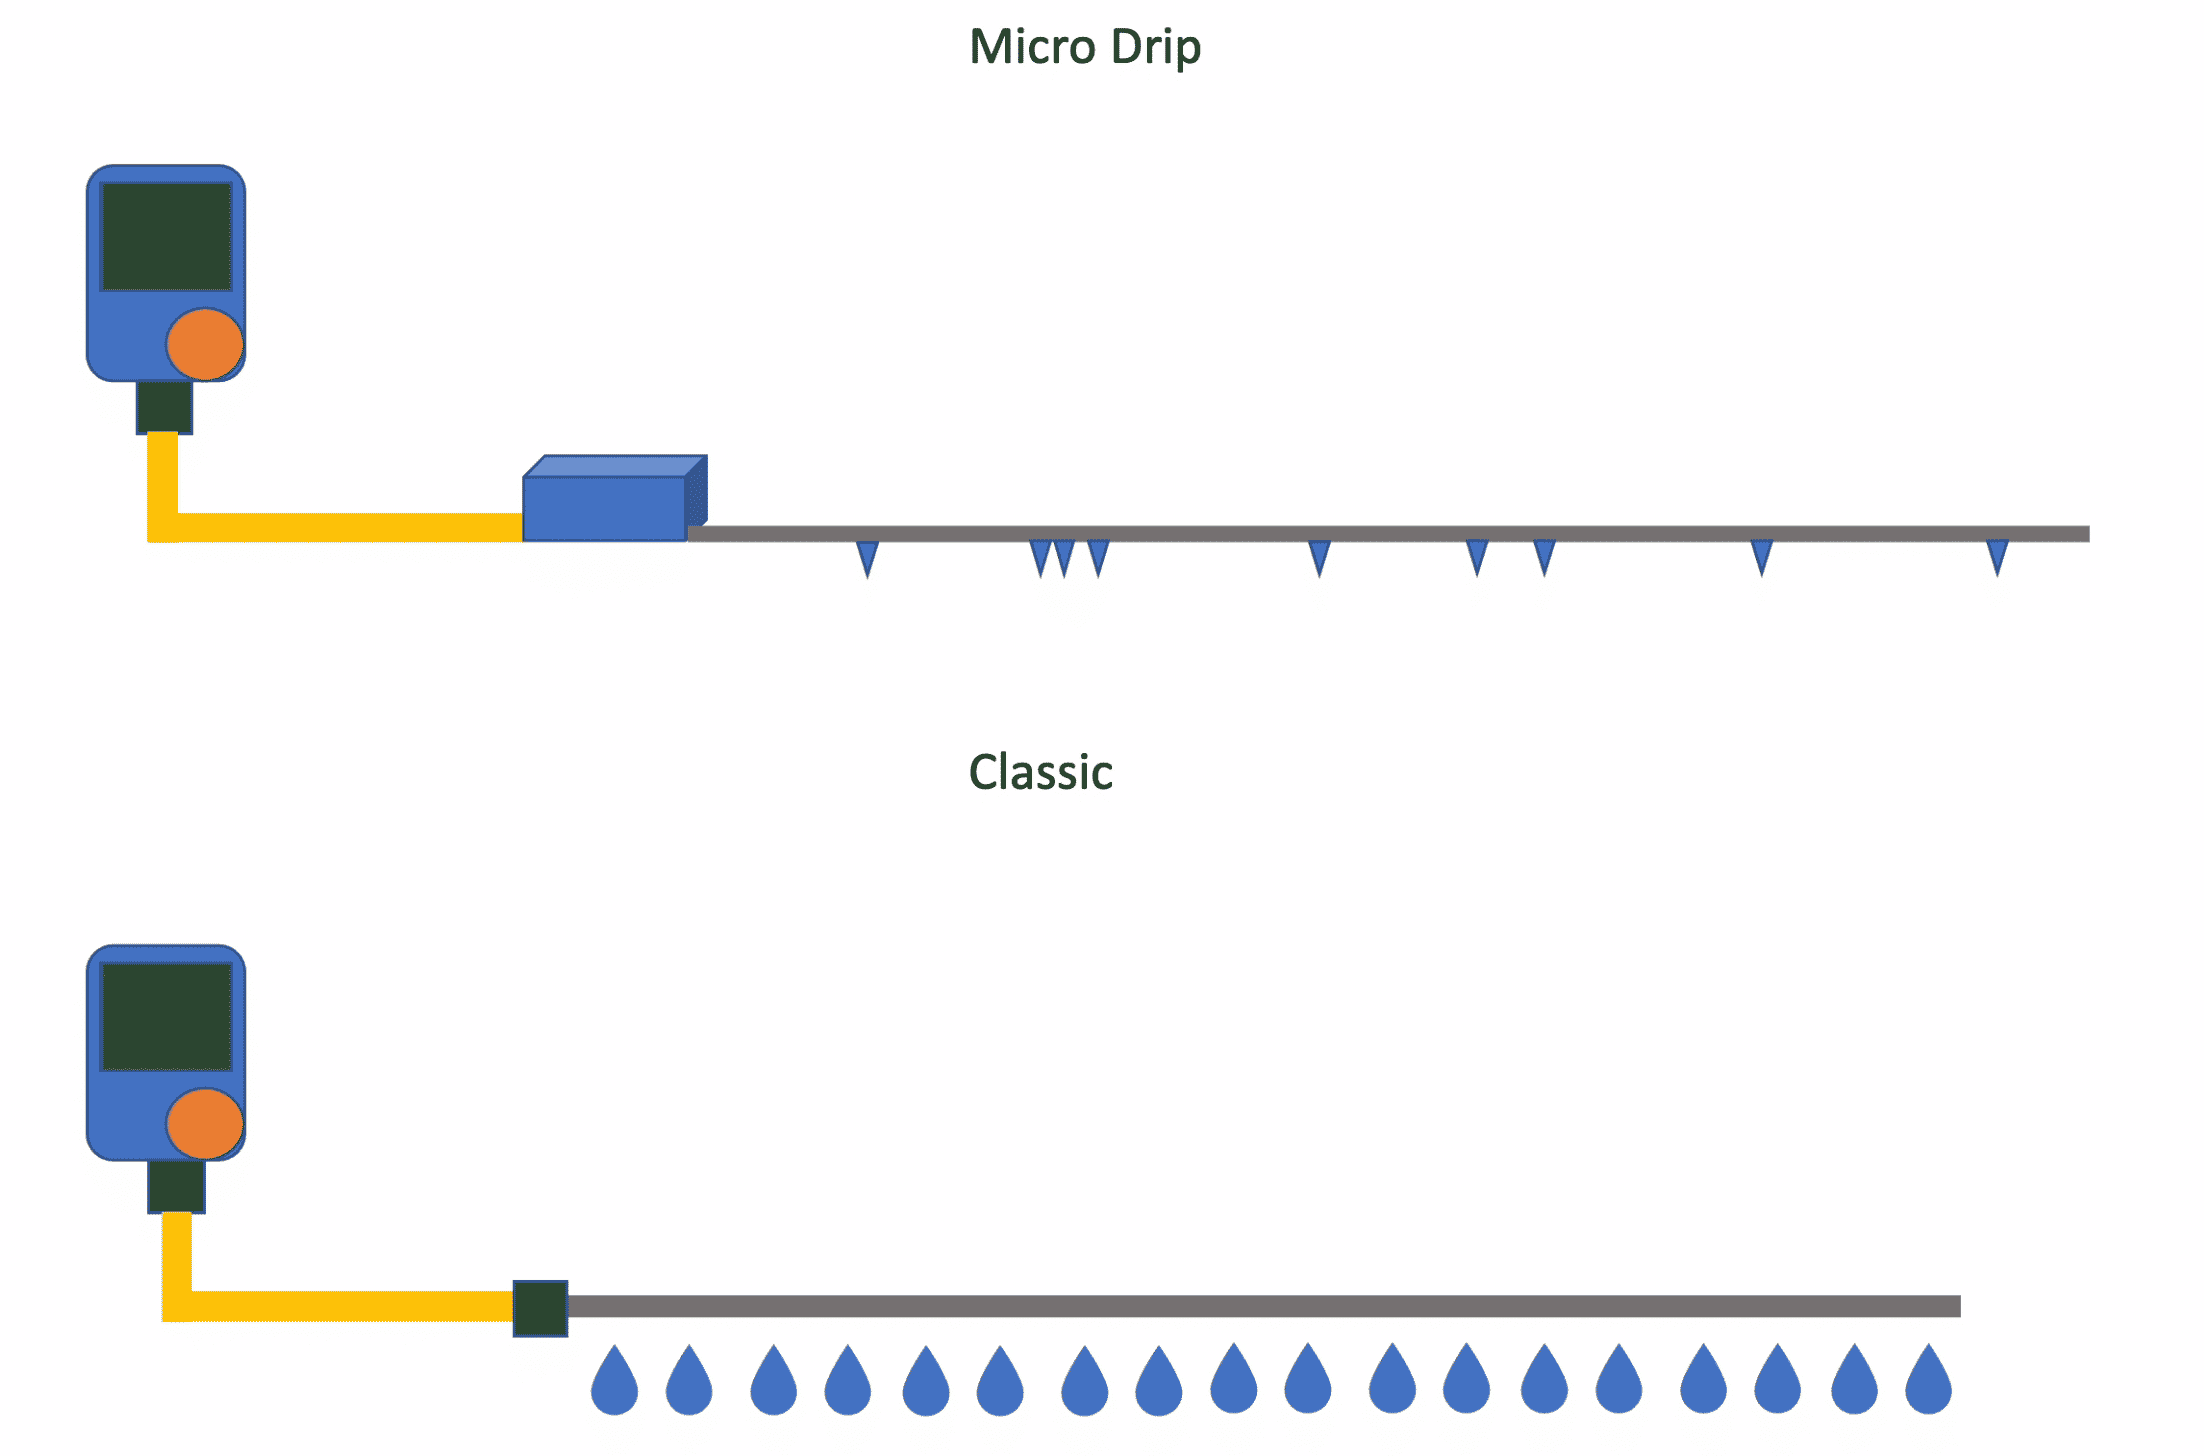 Vergleich von Micro-Drip und klassischem Bewässerungssystem